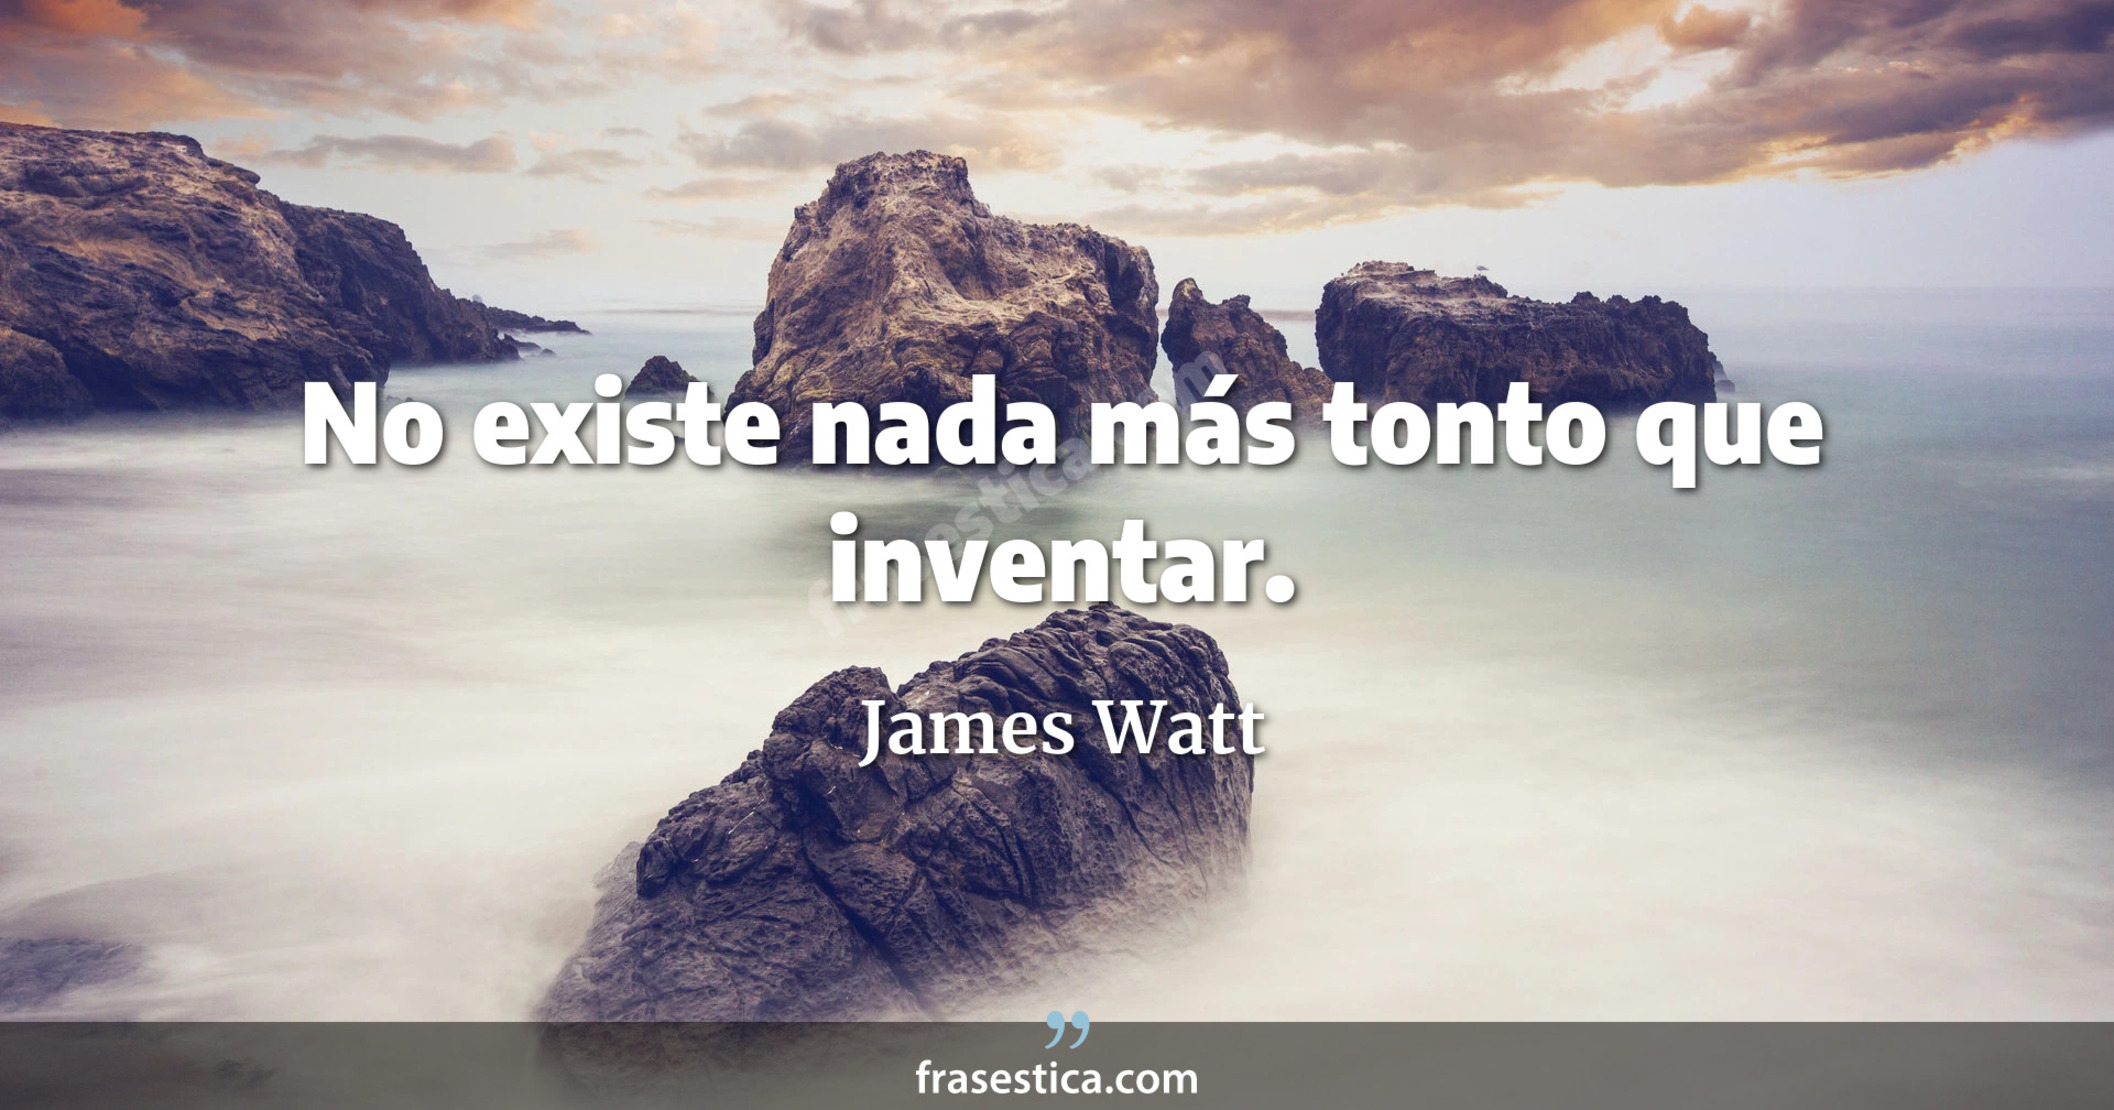 No existe nada más tonto que inventar. - James Watt